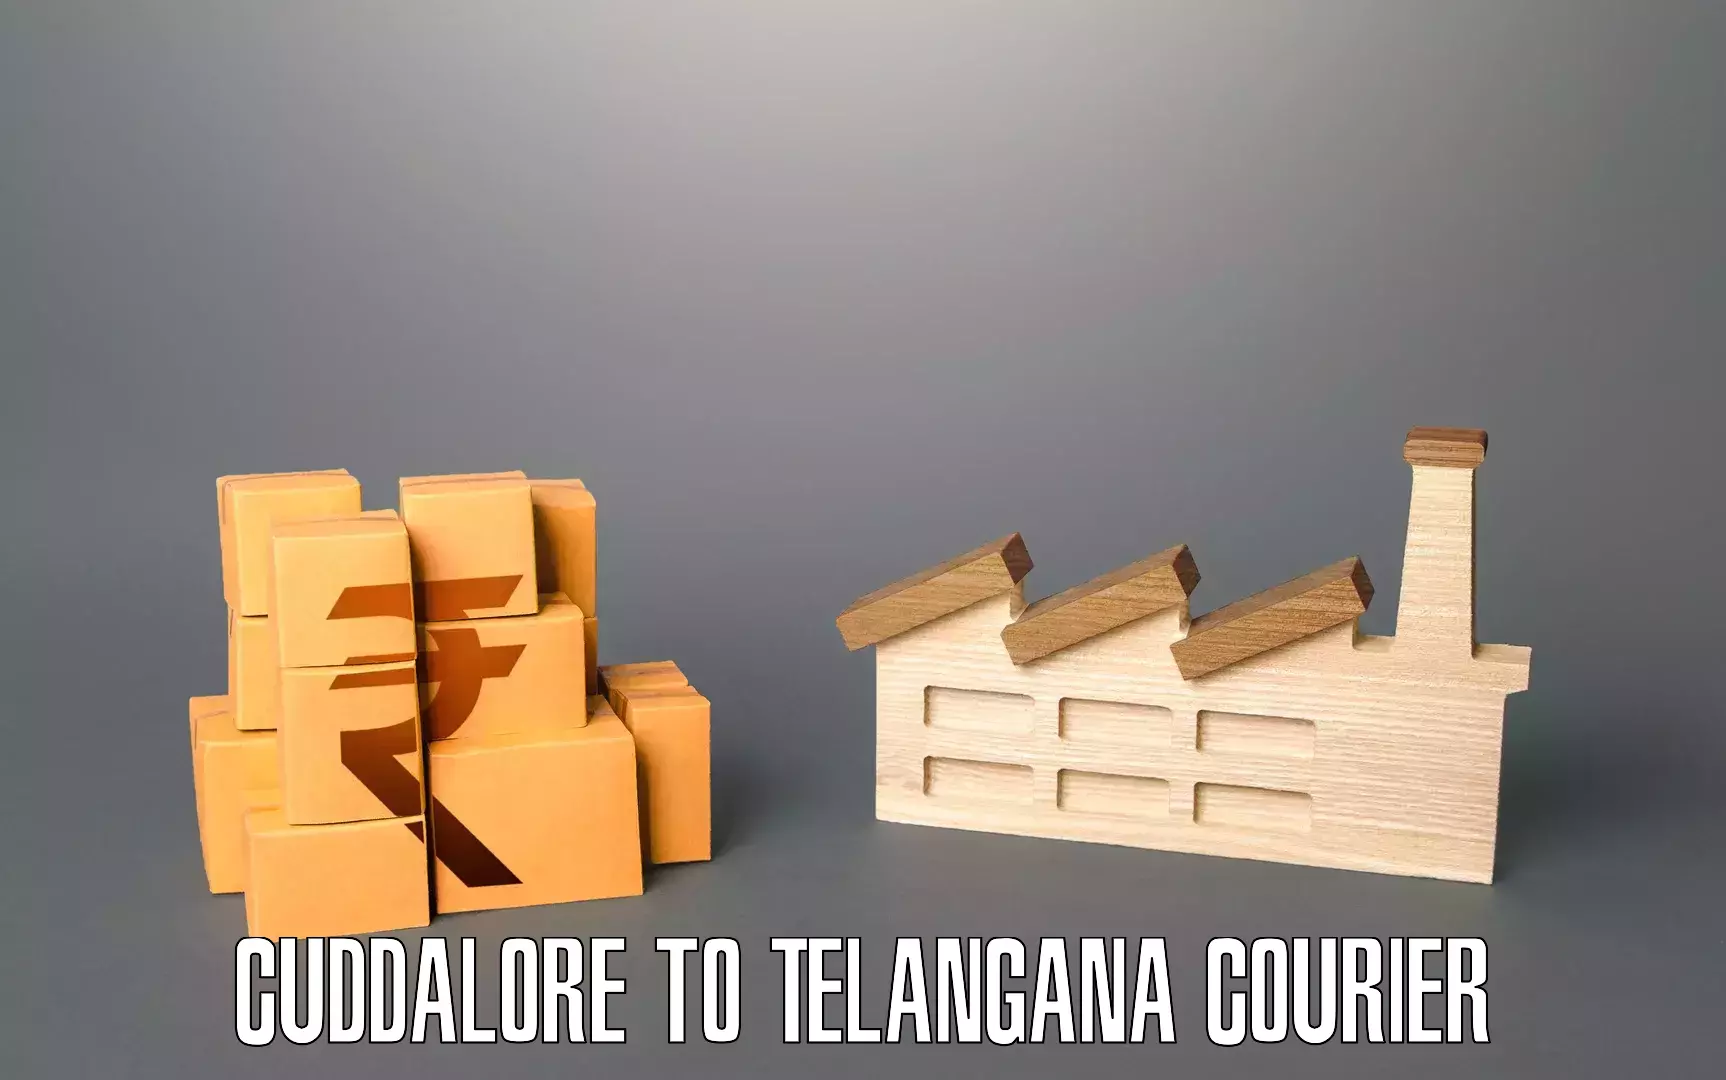 Furniture transport experts Cuddalore to Nizamabad